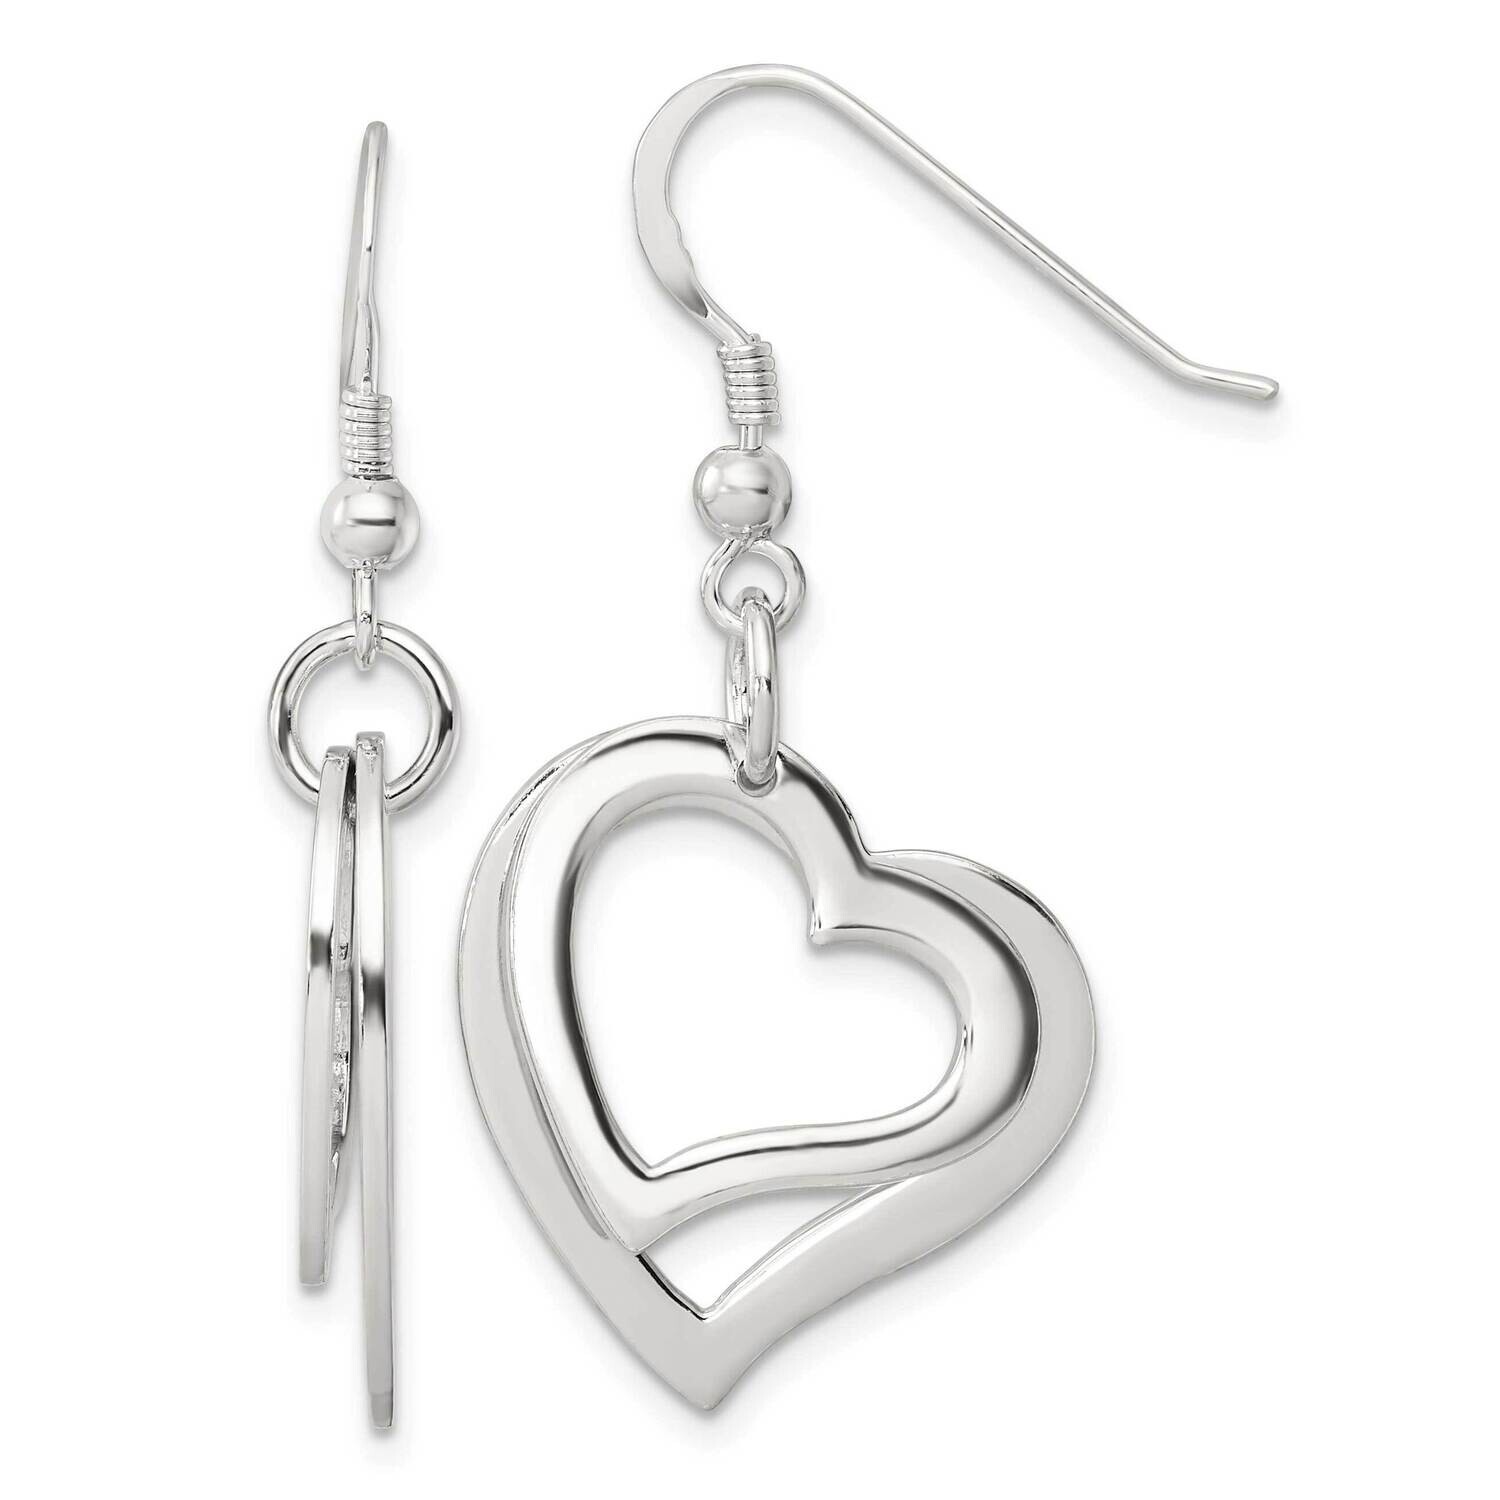 Two Piece Open Heart Shepherd Hook Earrings Sterling Silver Polished QE17533